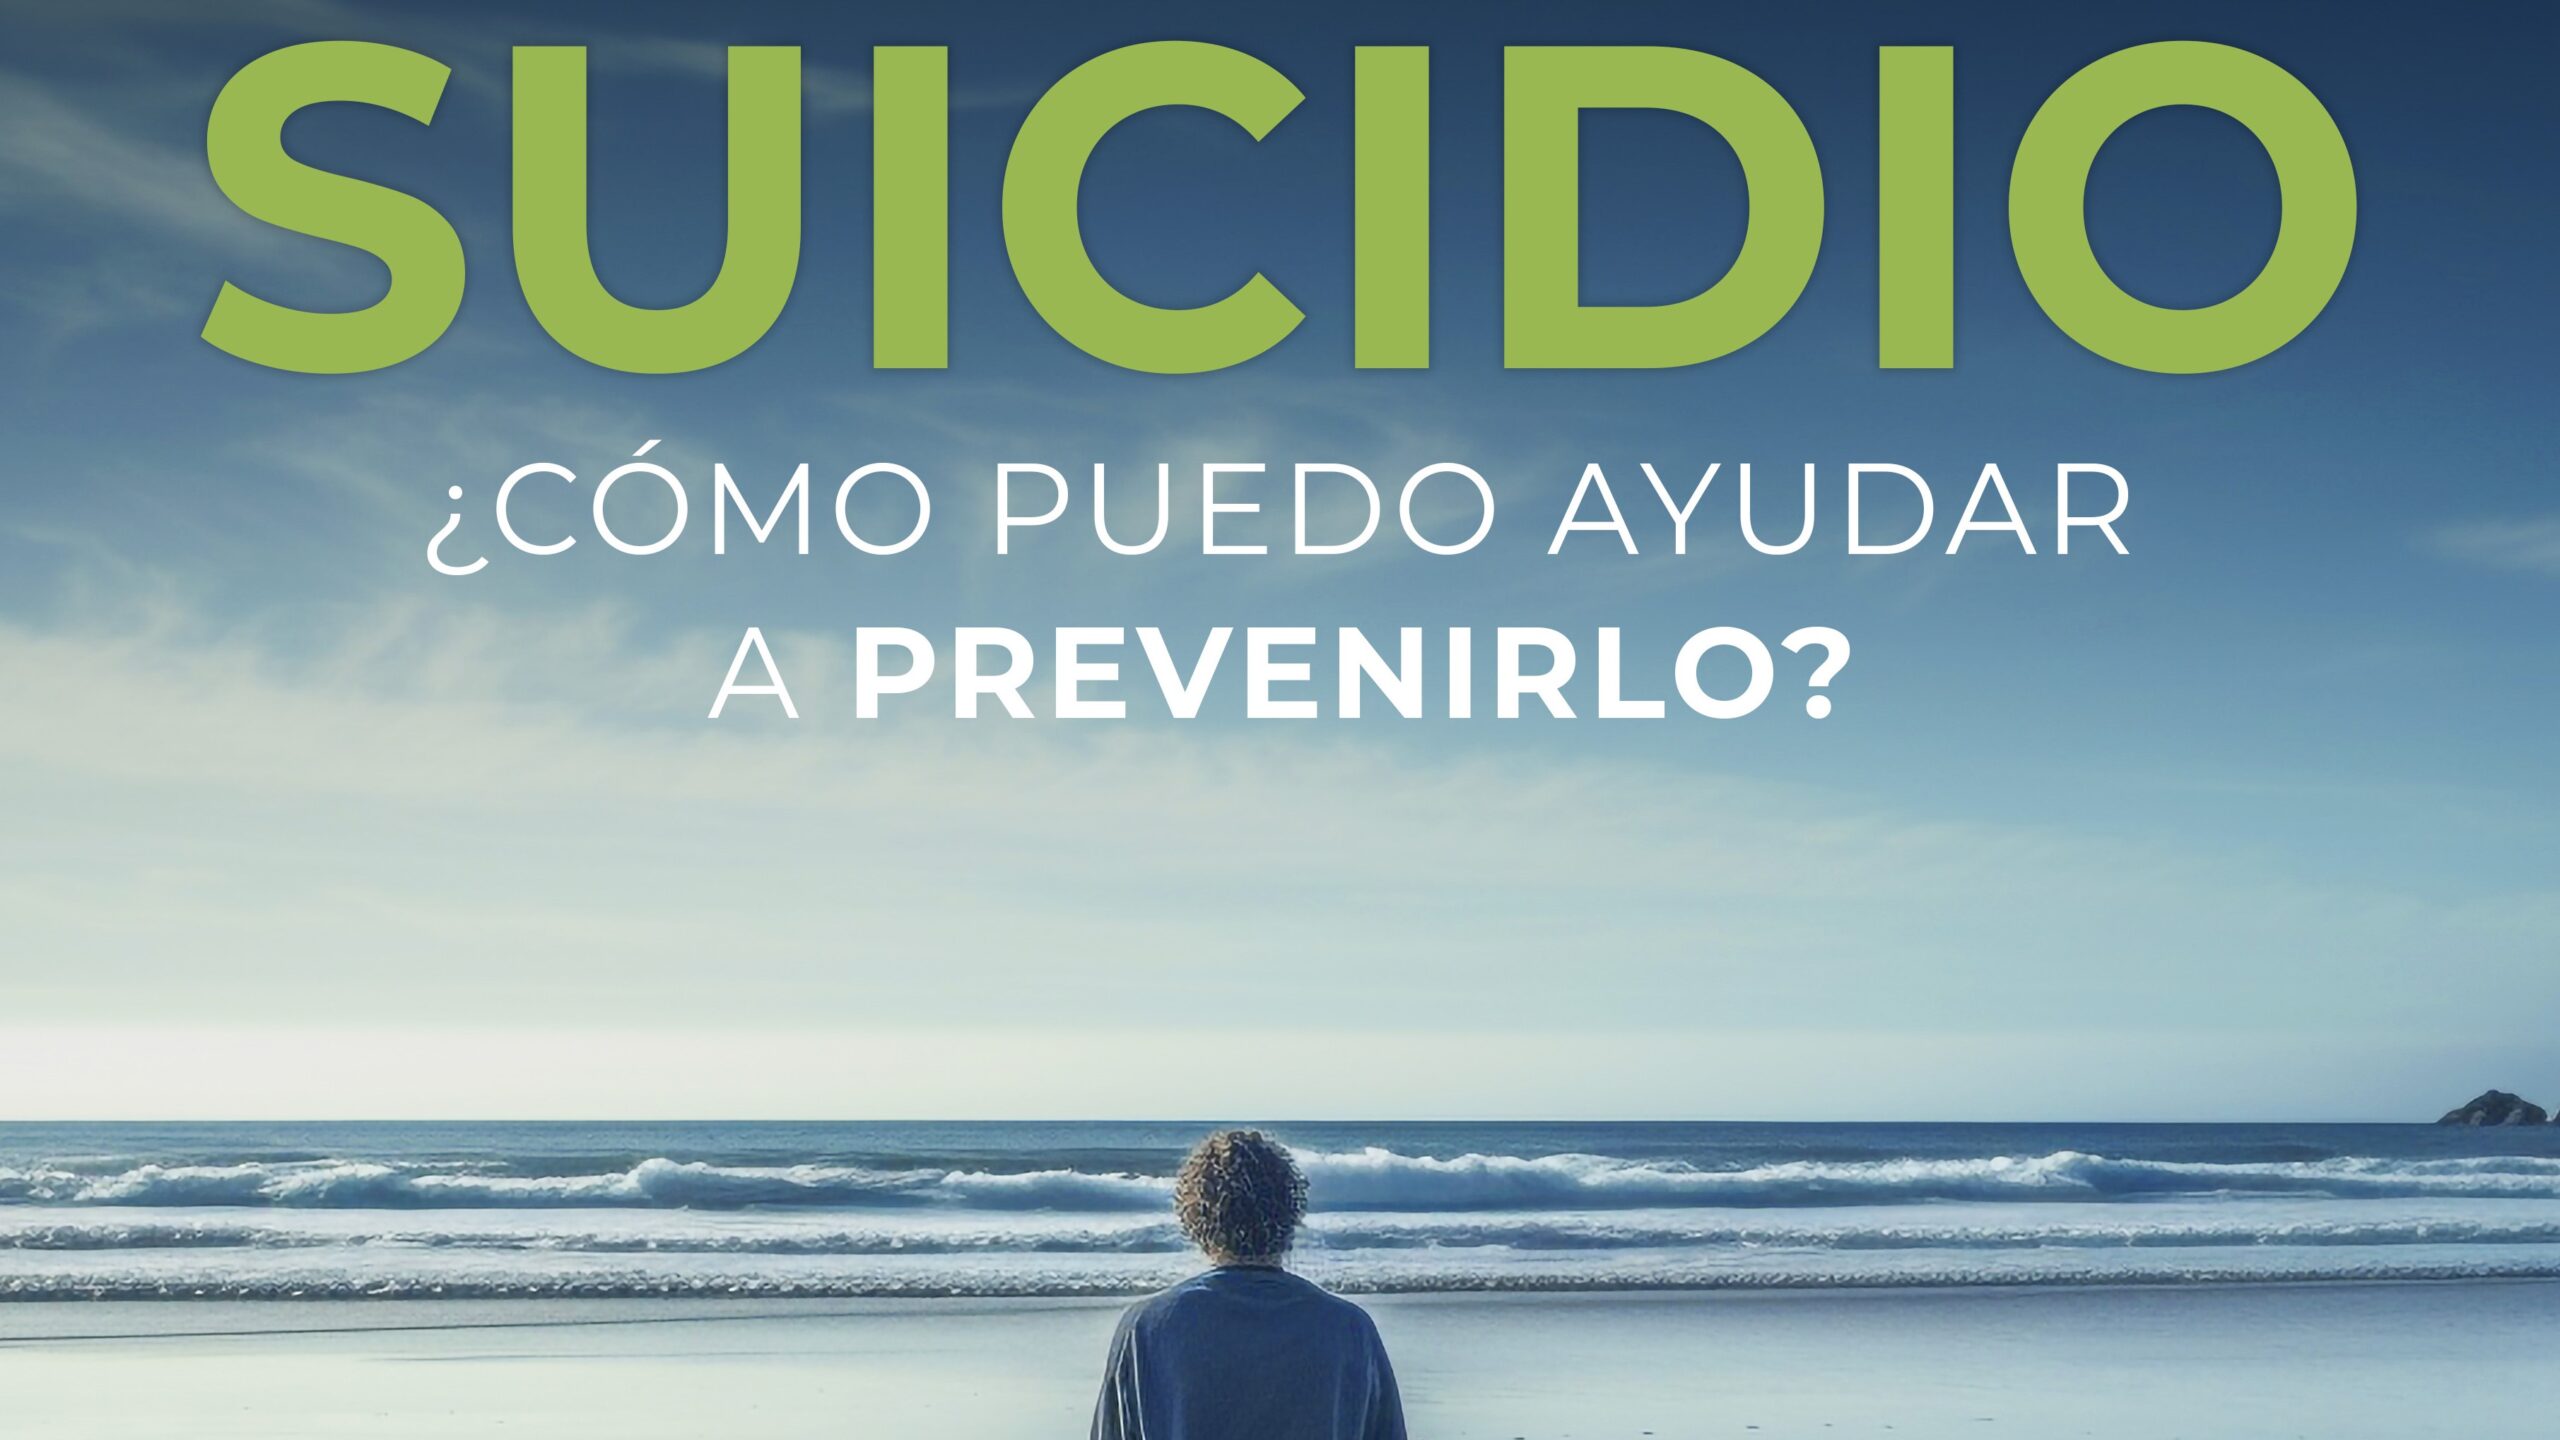 Agifes y Bidegin ofrecerán en Errenteria una charla sobre el suicidio, con el objetivo de dar pautas que ayuden a prevenirlo